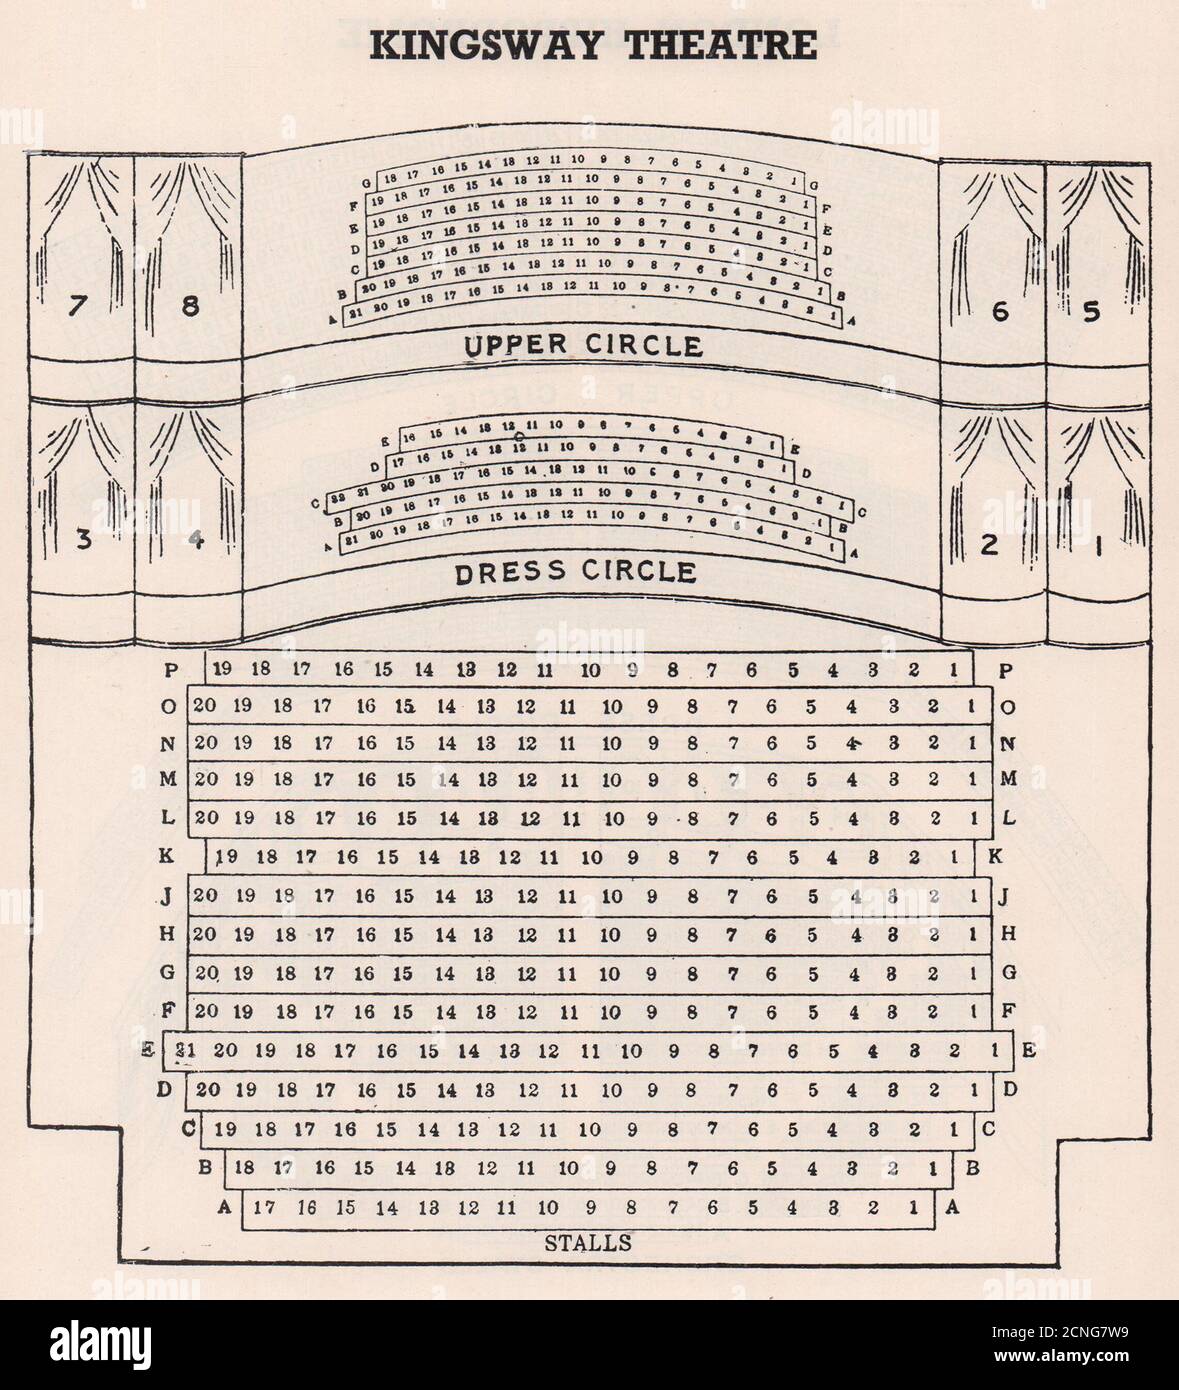 KINGSWAY GREAT QUEEN STREET (NOUVEAUTÉ) THEATRE. Plan des sièges. Extrémité ouest 1937 Banque D'Images